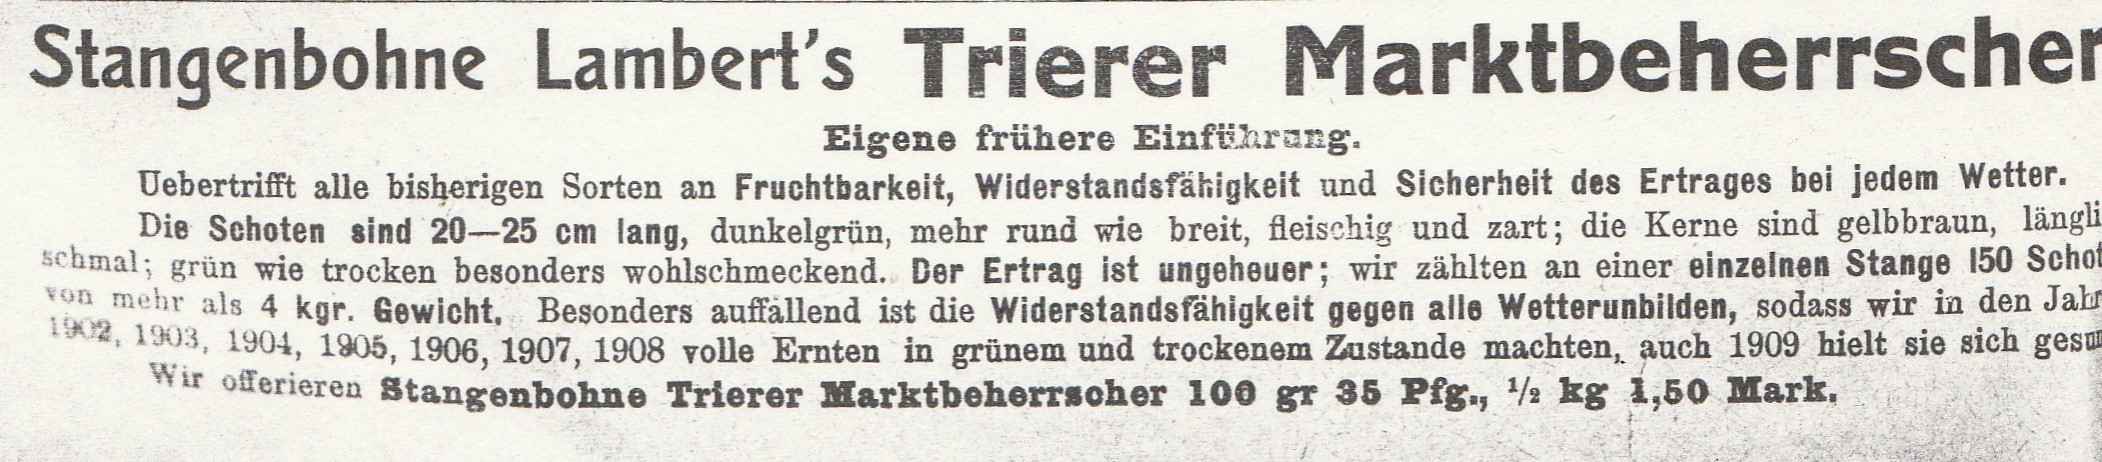 Marktbeherrscher, Trierer M.-1910 new